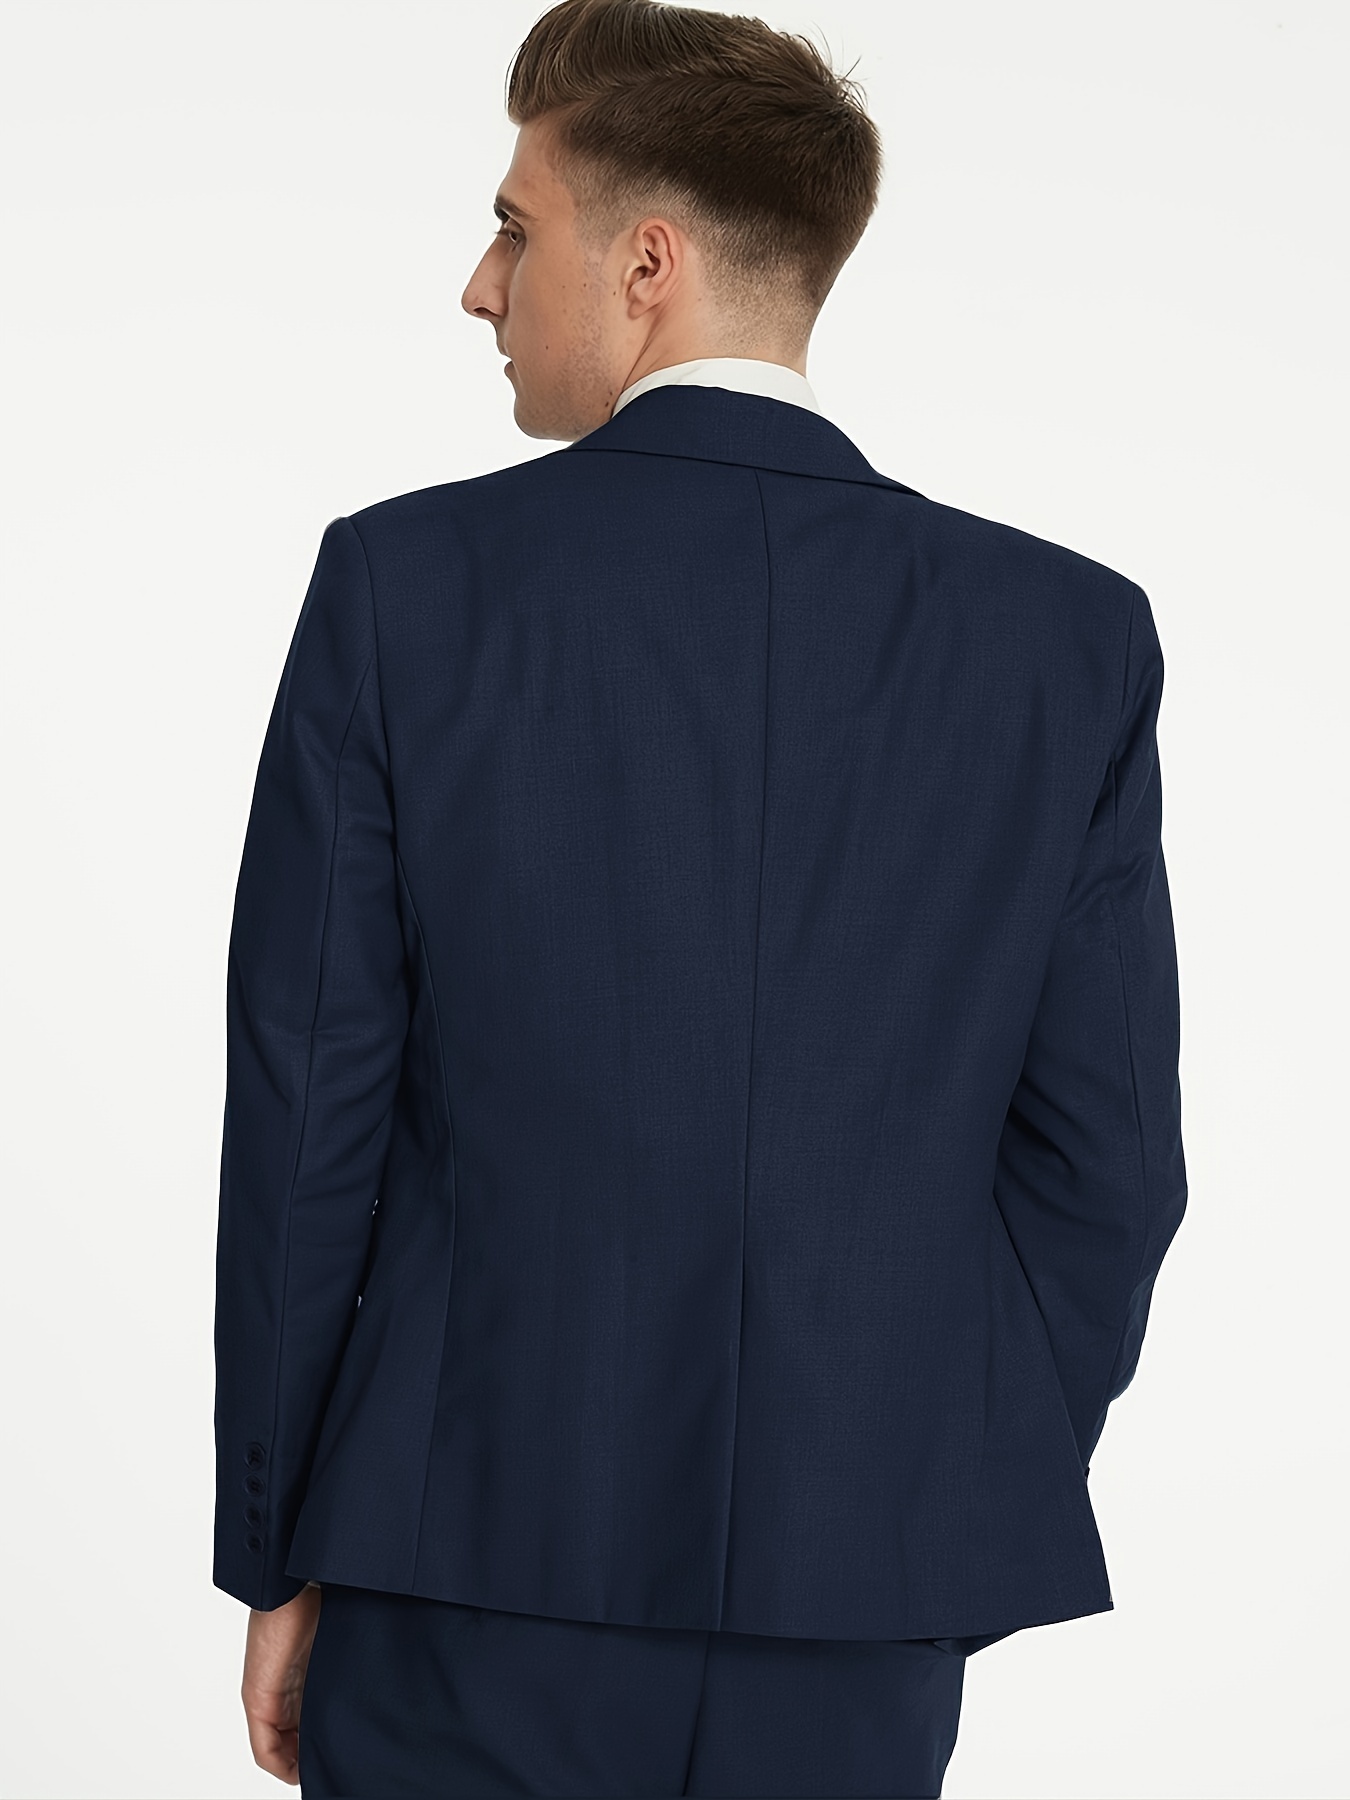 Buy Men Blue Slim Fit Solid Formal Blazer Online - 757453